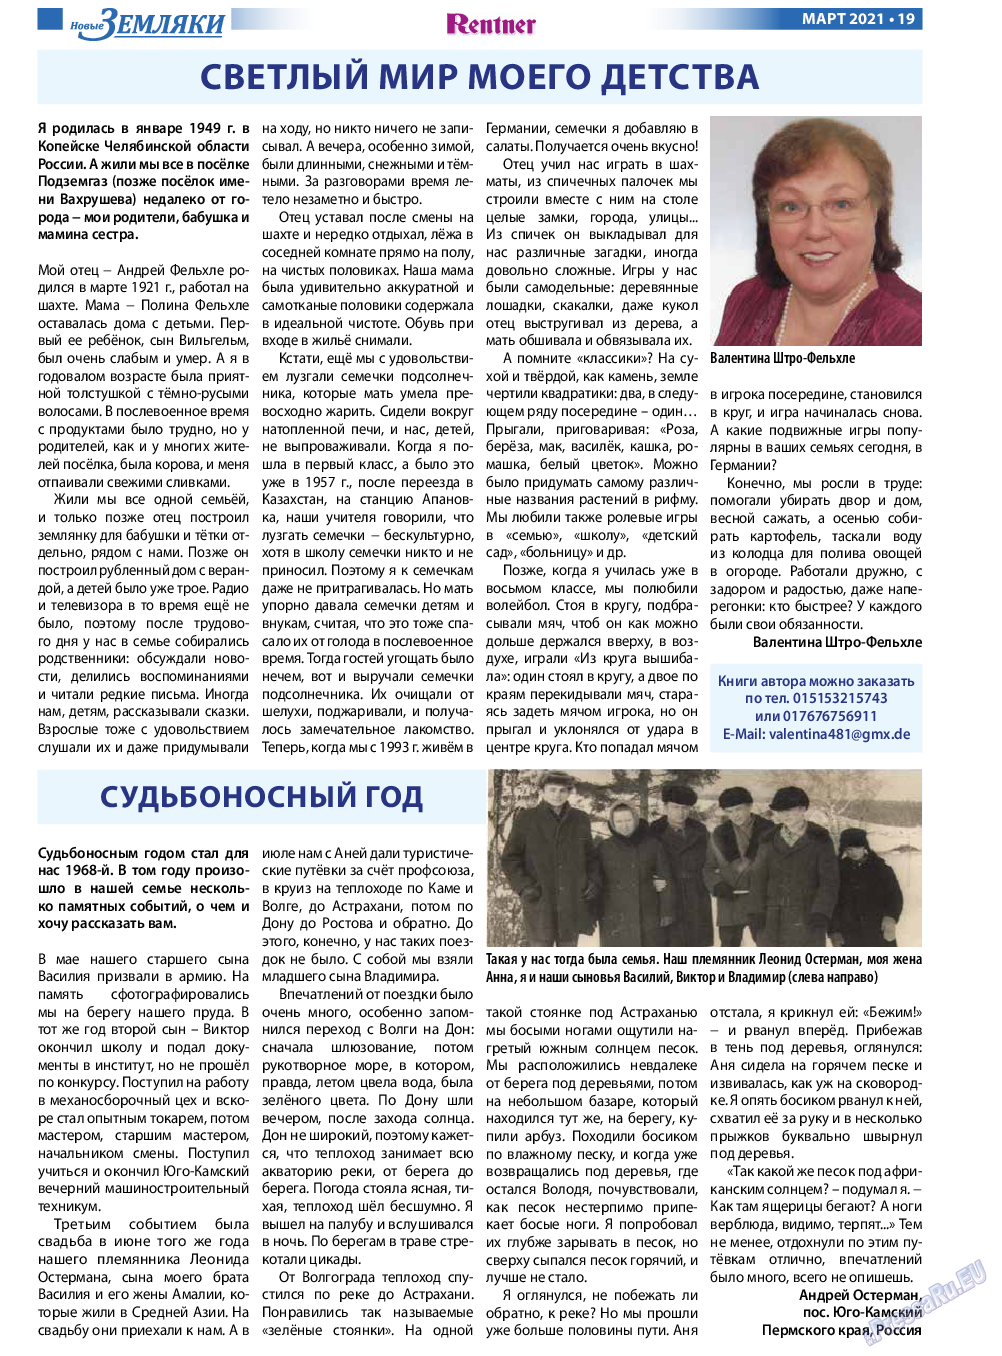 Новые Земляки, газета. 2021 №3 стр.19